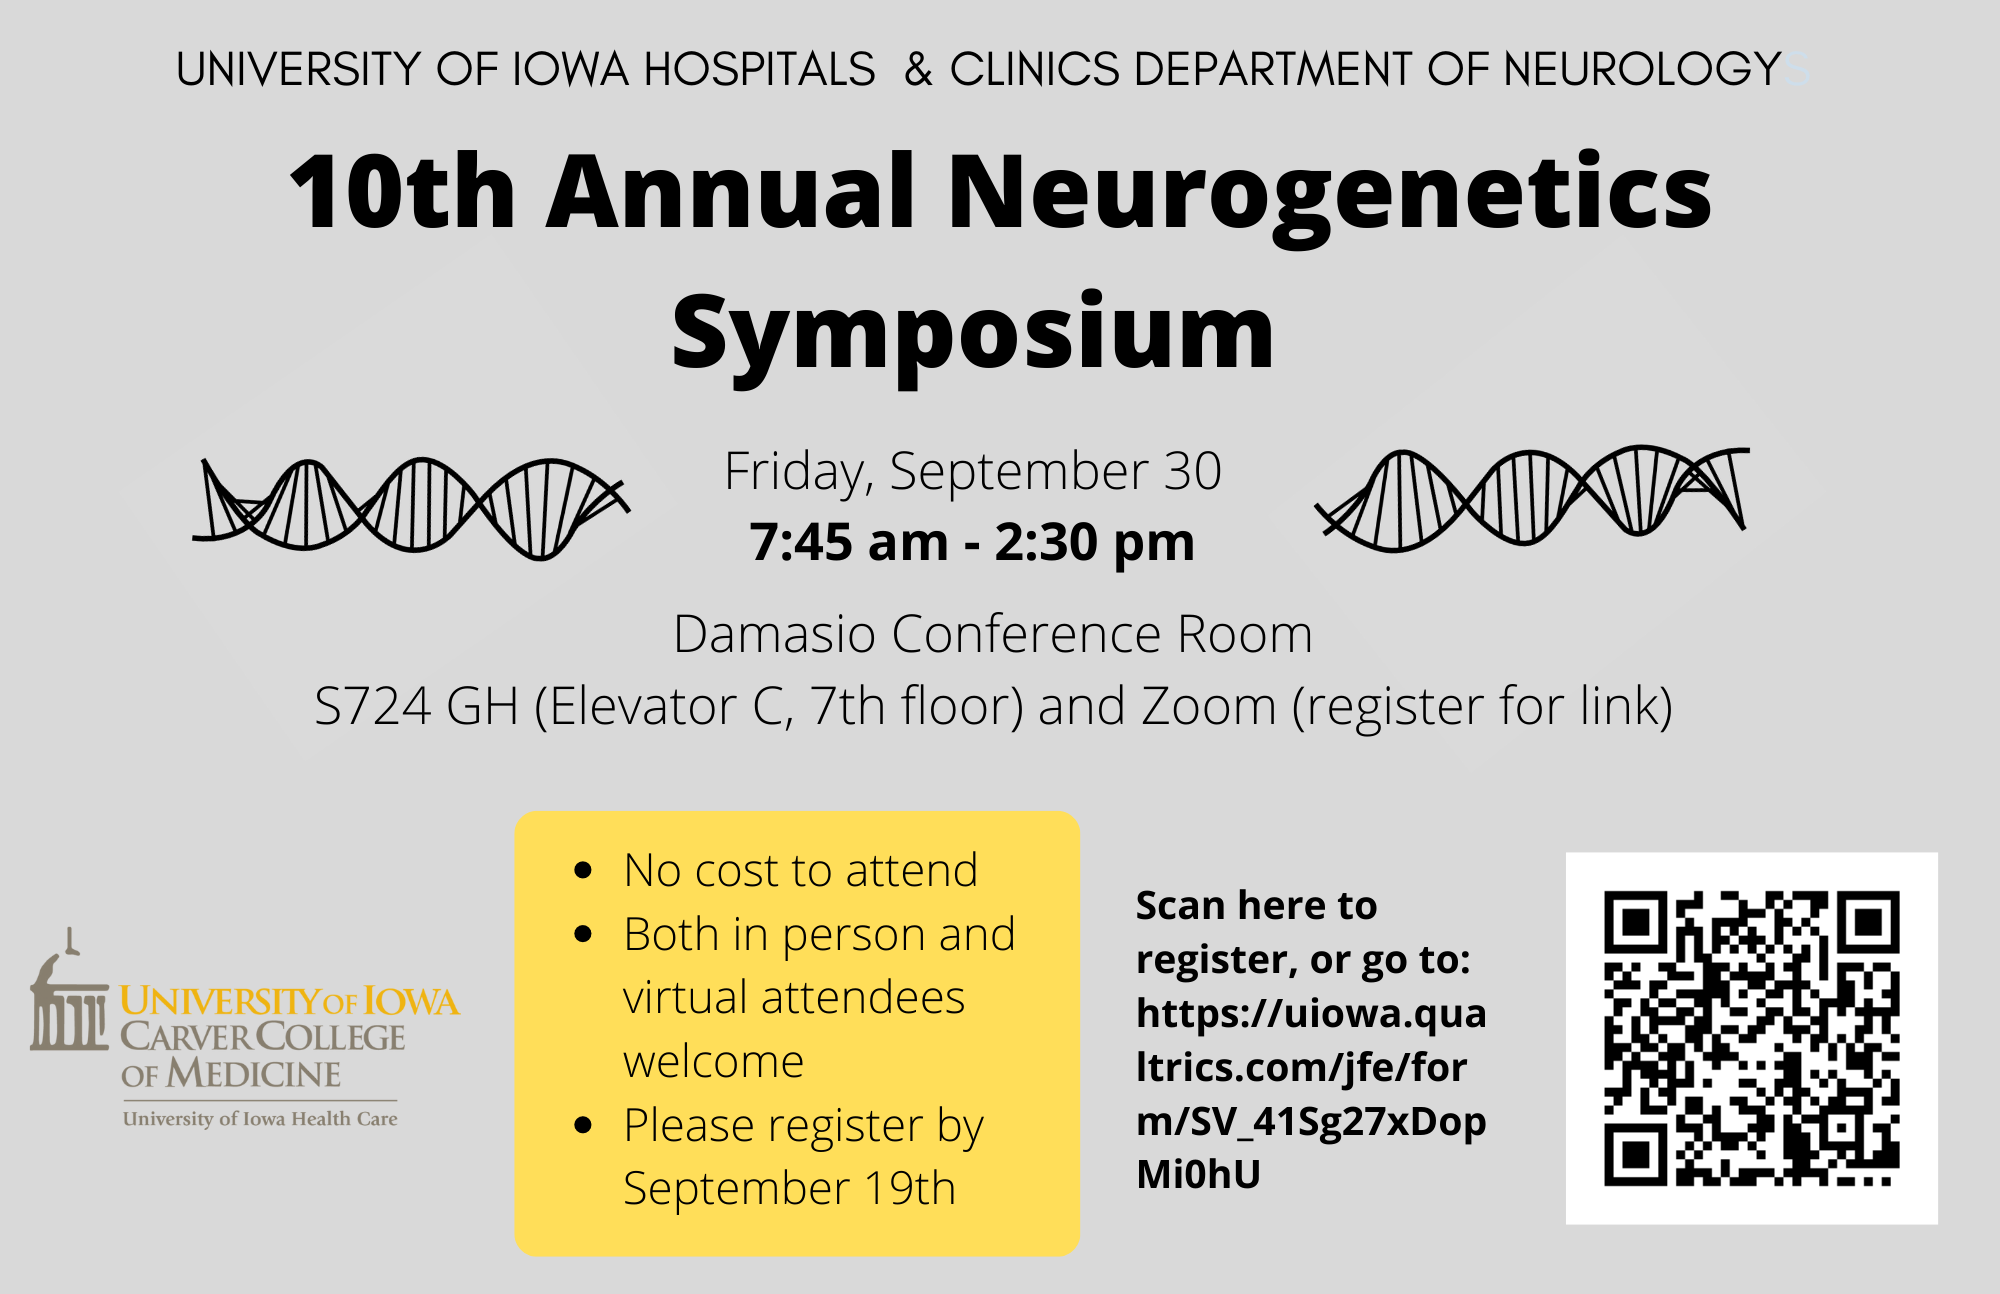 10th Annual Neurogenetics Symposium  promotional image